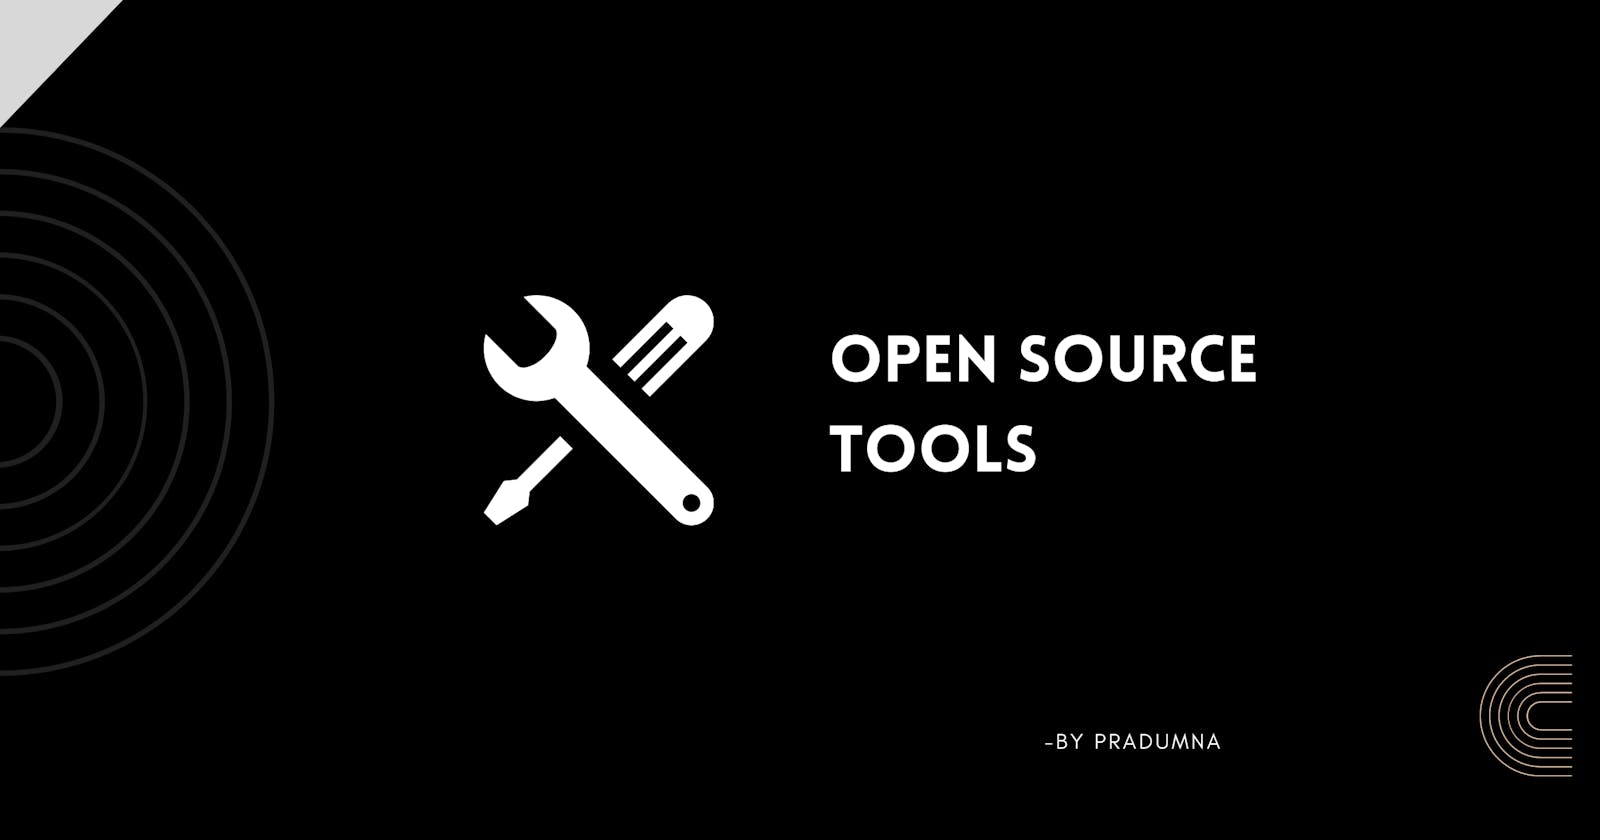 Open Source tools